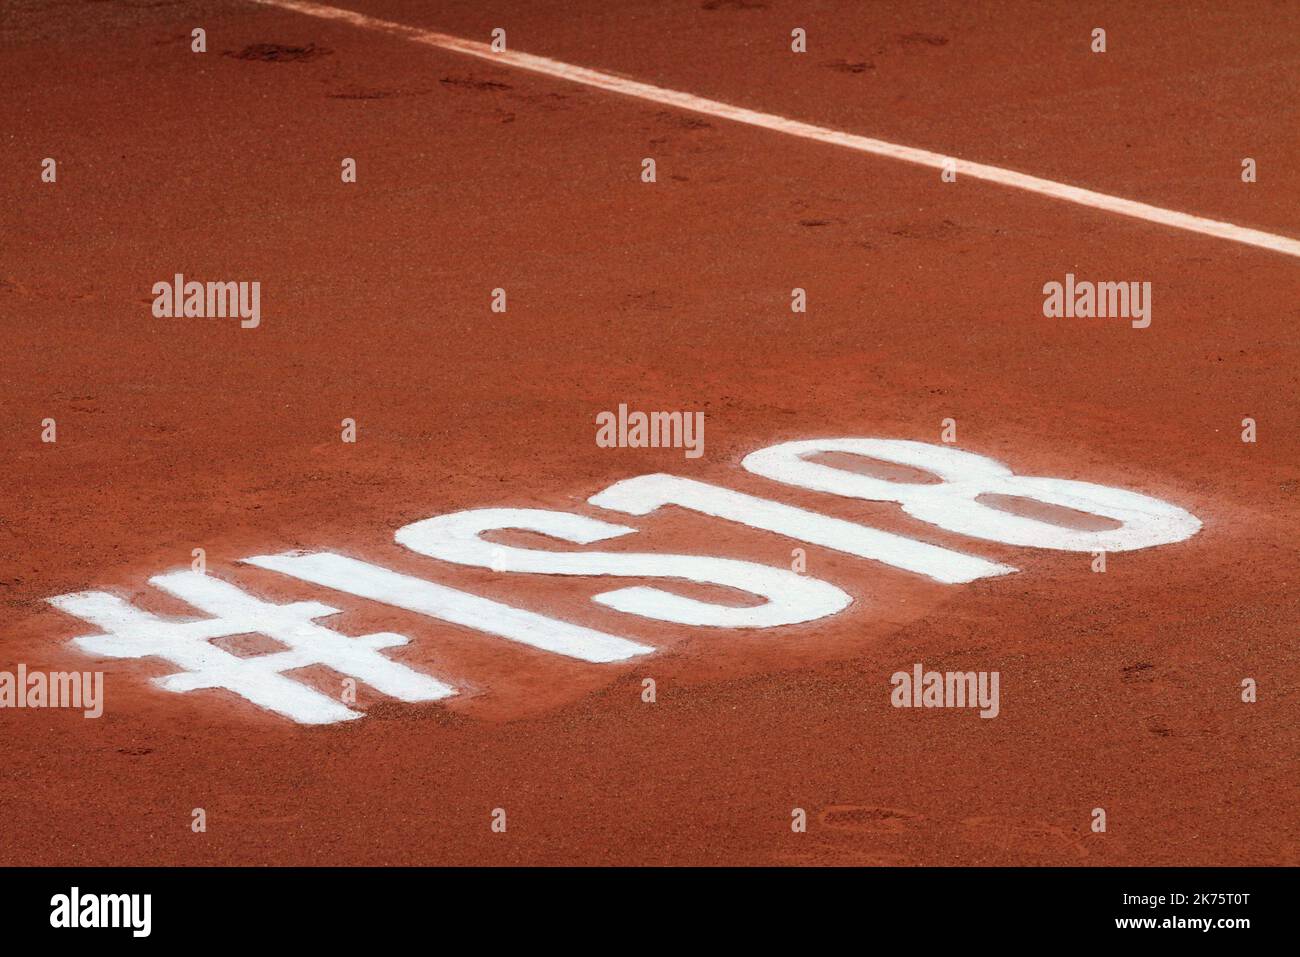 Partido de tenis entre A. Pavlyuchenkova o Rusia y N. Vikhlyantseva durante el Abierto Internacional de Tenis Femenino en Estrasburgo, Francia, el 23 de mayo de 2018. Foto de stock